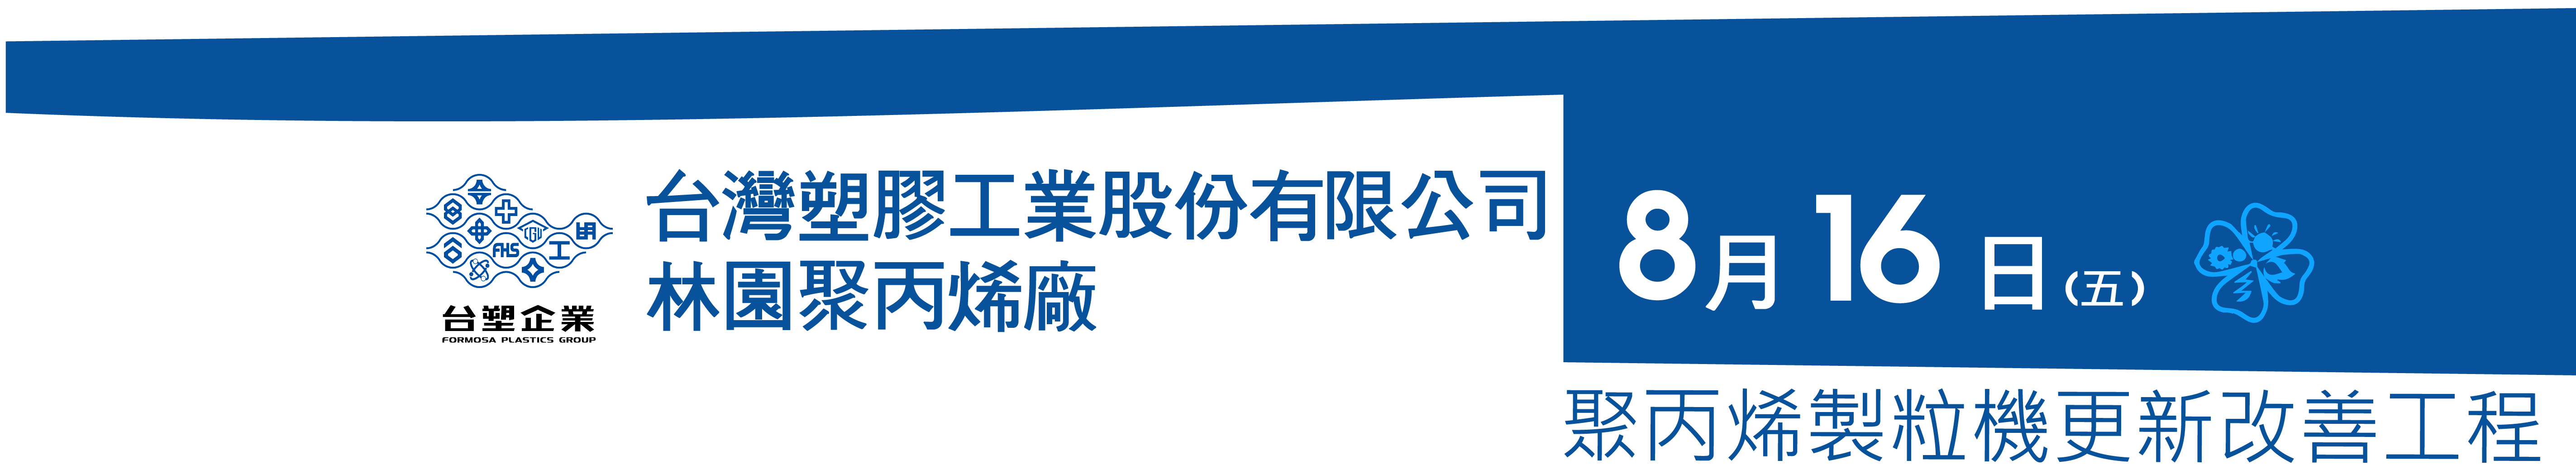 台灣塑膠工業股份有限公司林園聚丙烯廠